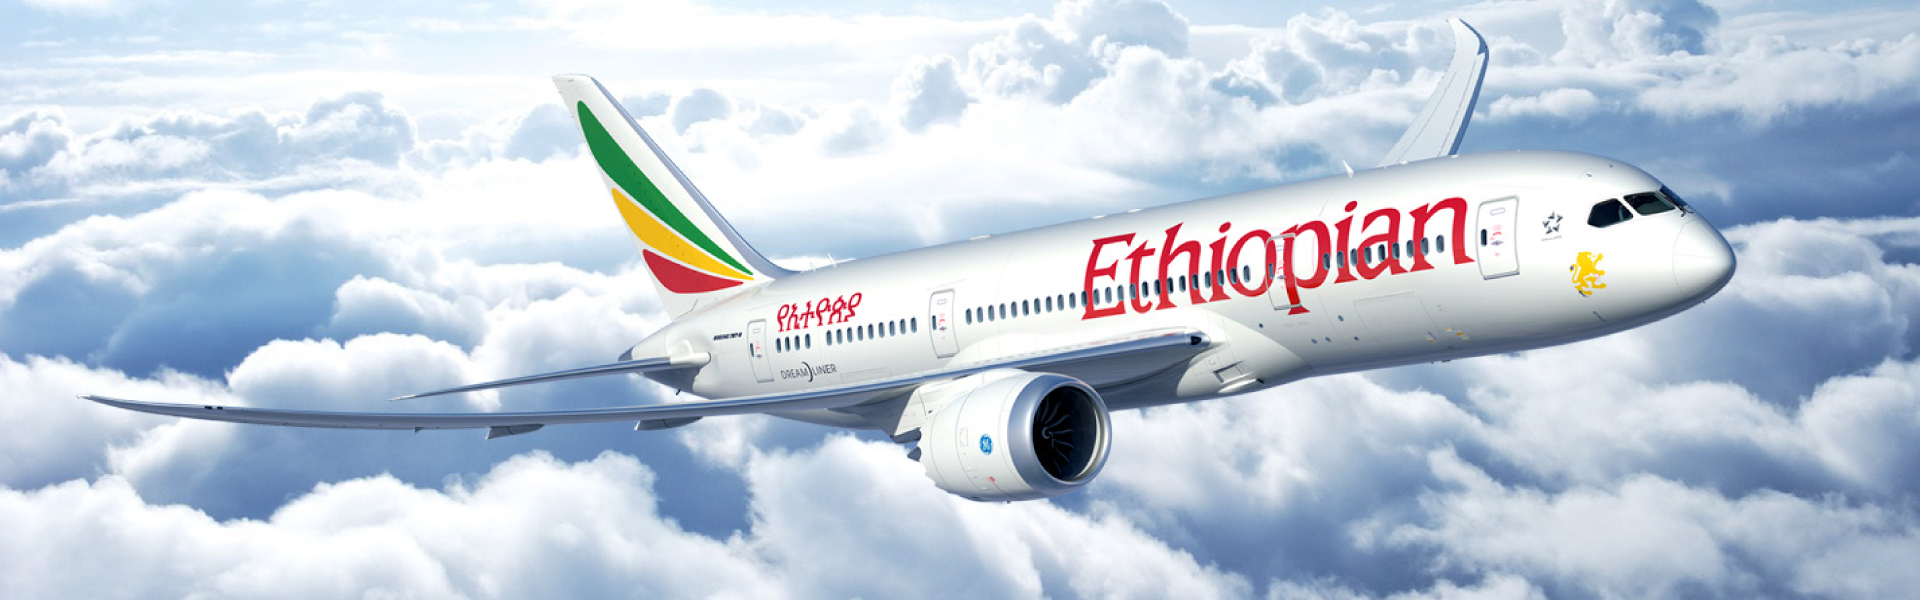 ETHIOPIAN AIRLINES AFFILIATE PROGRAM